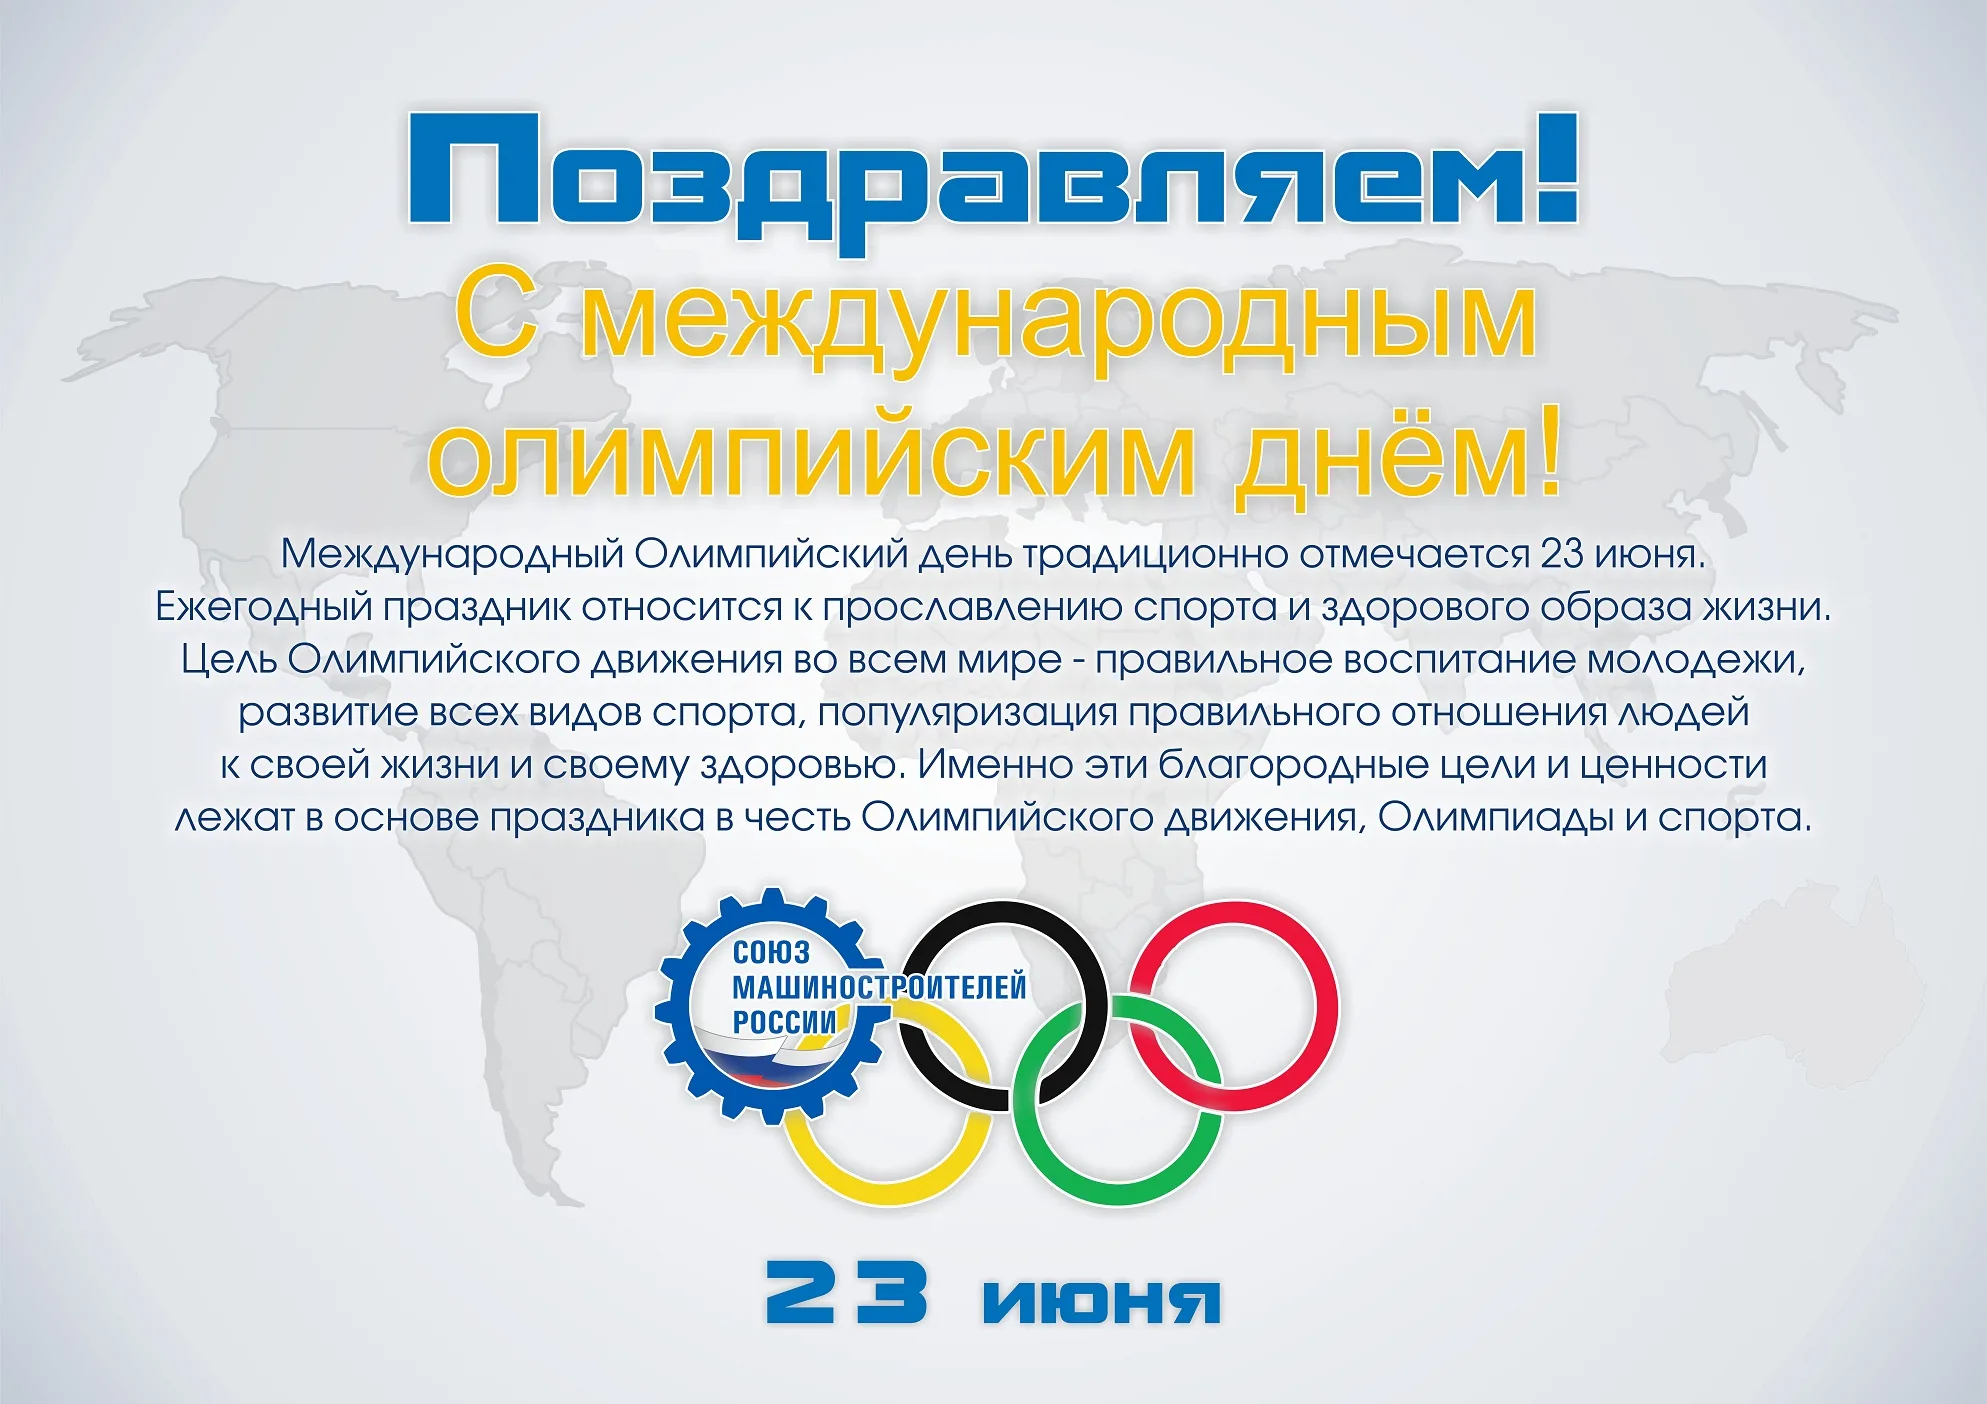 Международный Олимпийский день. 23 Июня Международный Олимпийский день. Международныхолимпийскиц день. Международный Олимпийский день поздравления.